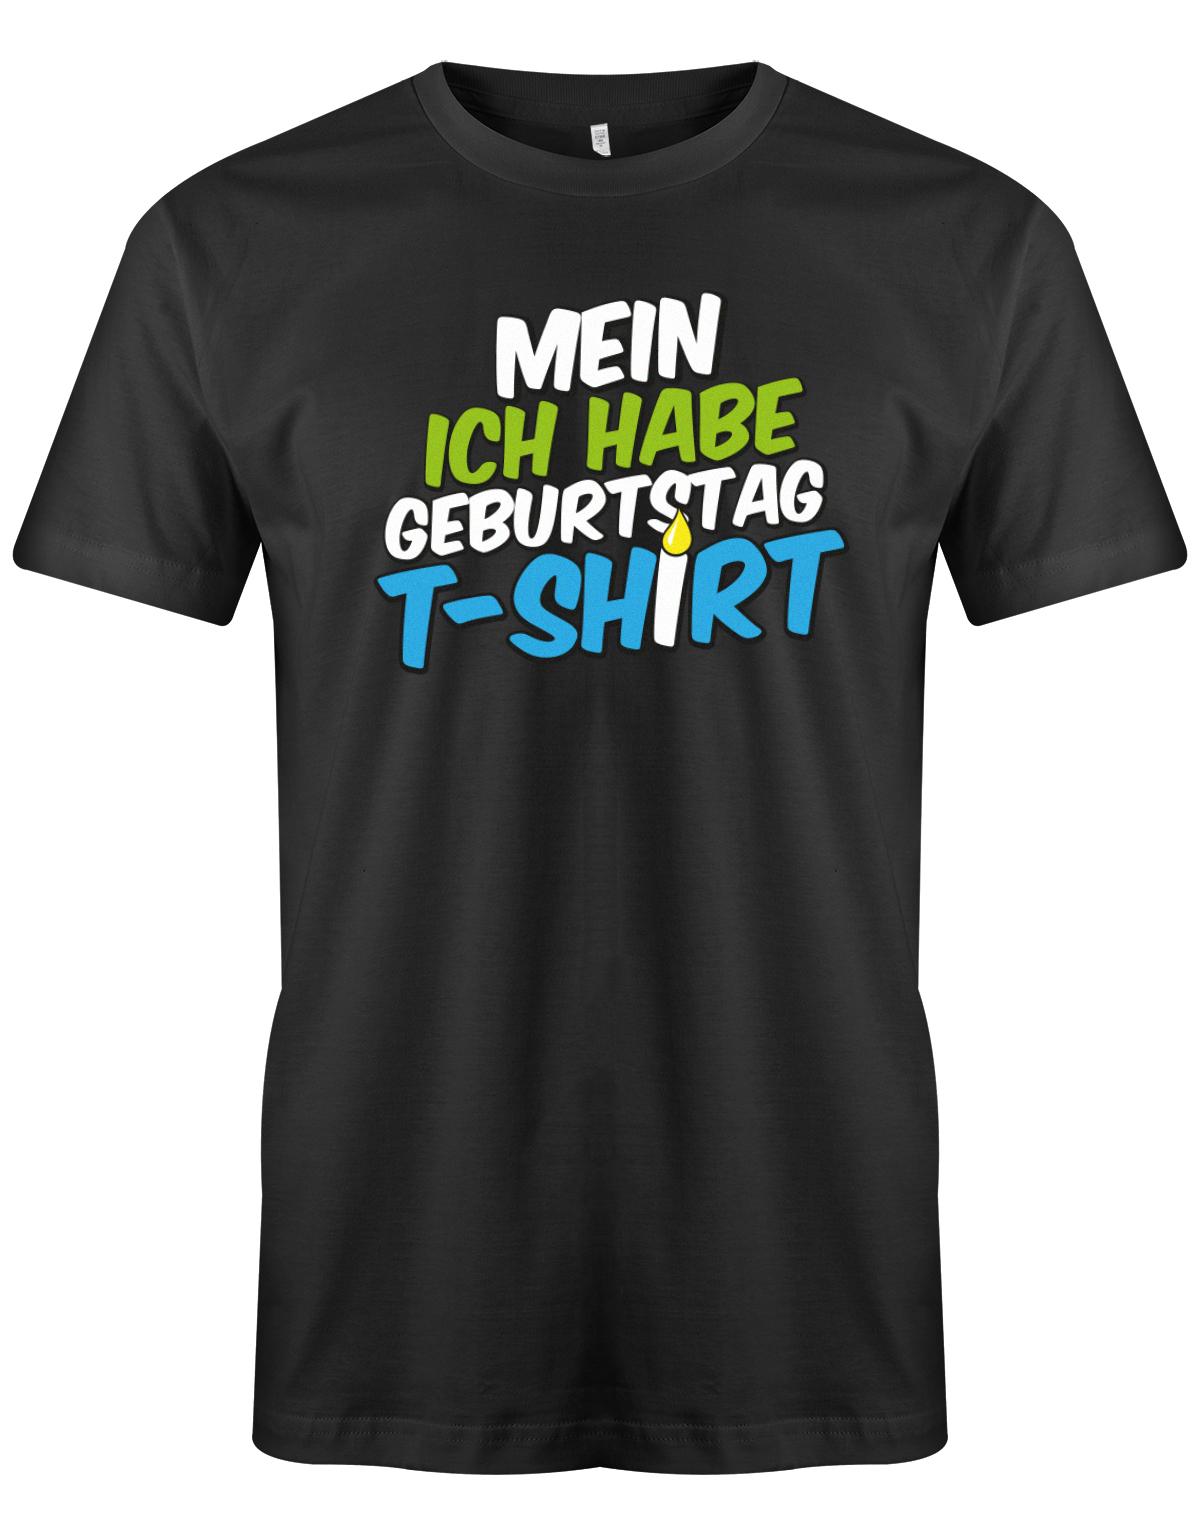 Mein-ich-habe-Geburtstag-t-Shirt-Herren-SChwarz